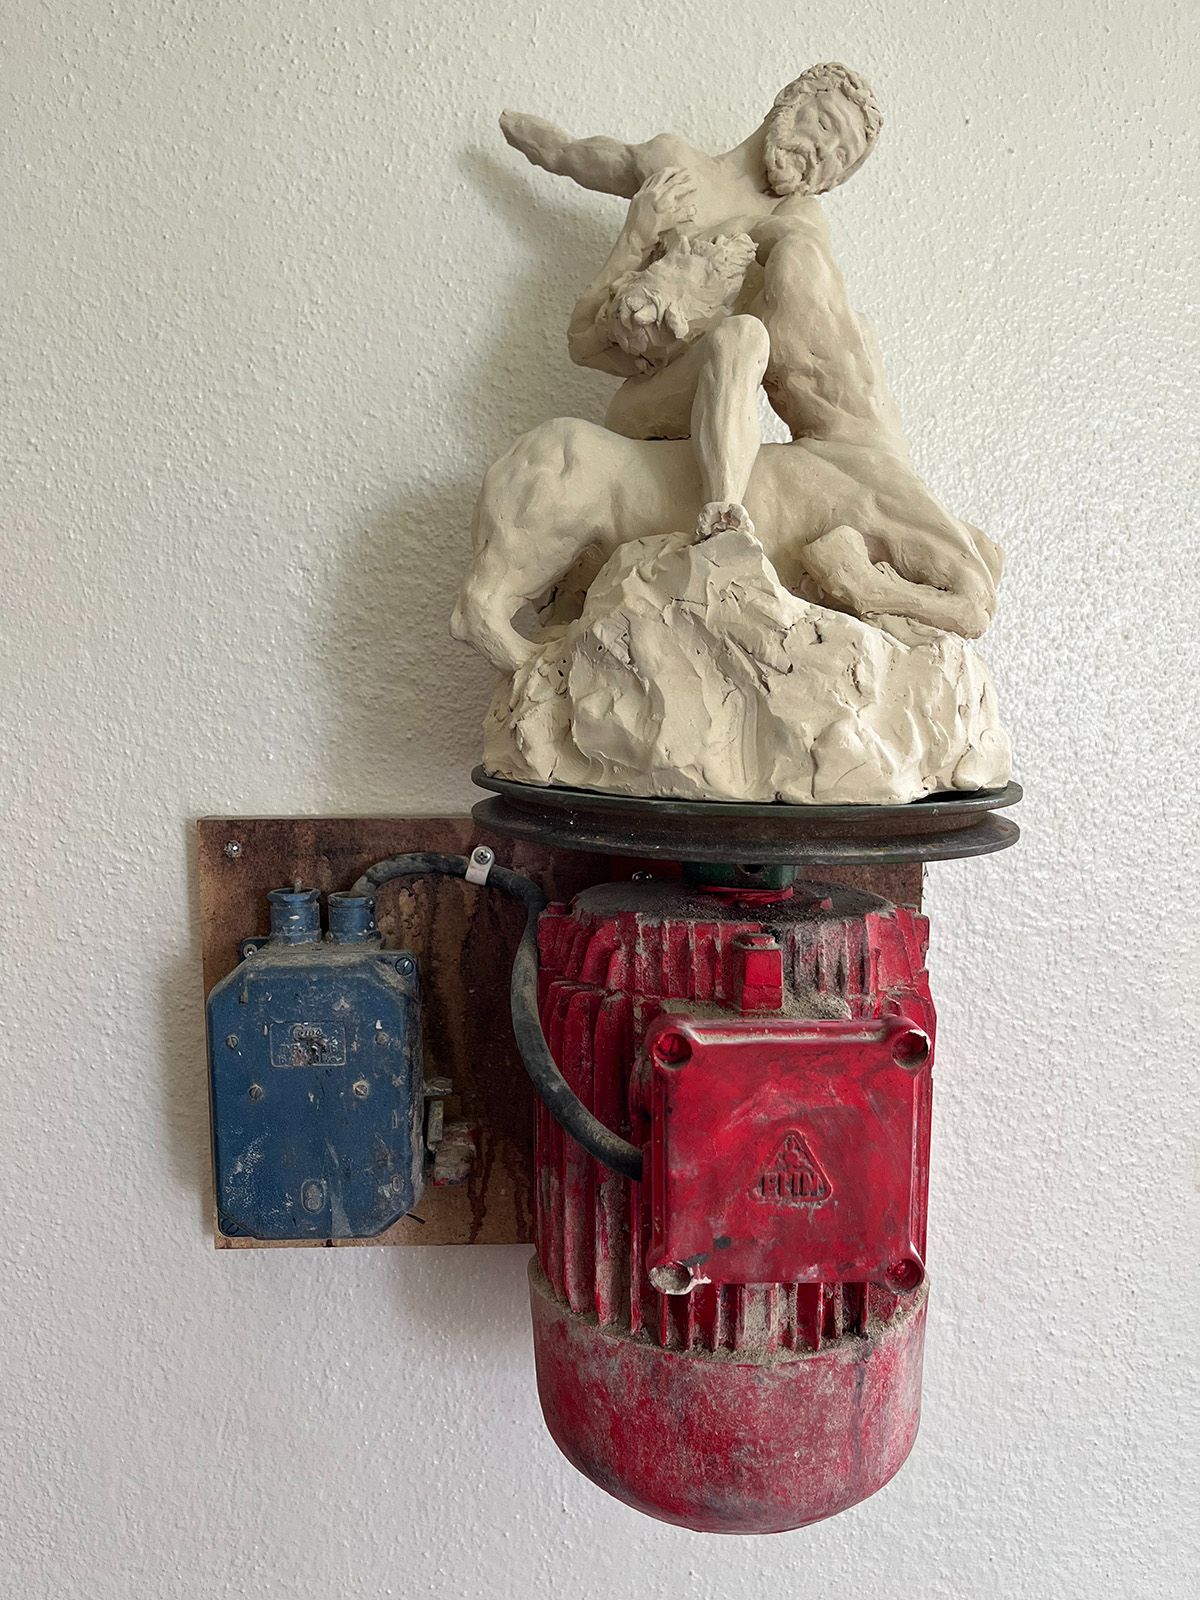 Foto. På en vit vägg hänger en skulptur. En röd cylindrisk del av en motor, från den går en kabel till en blå dosa direkt till vänster. Ovanpå den röda delen sitter en mer klassisk skulptur av en man och en kentaur som verkar strida. 